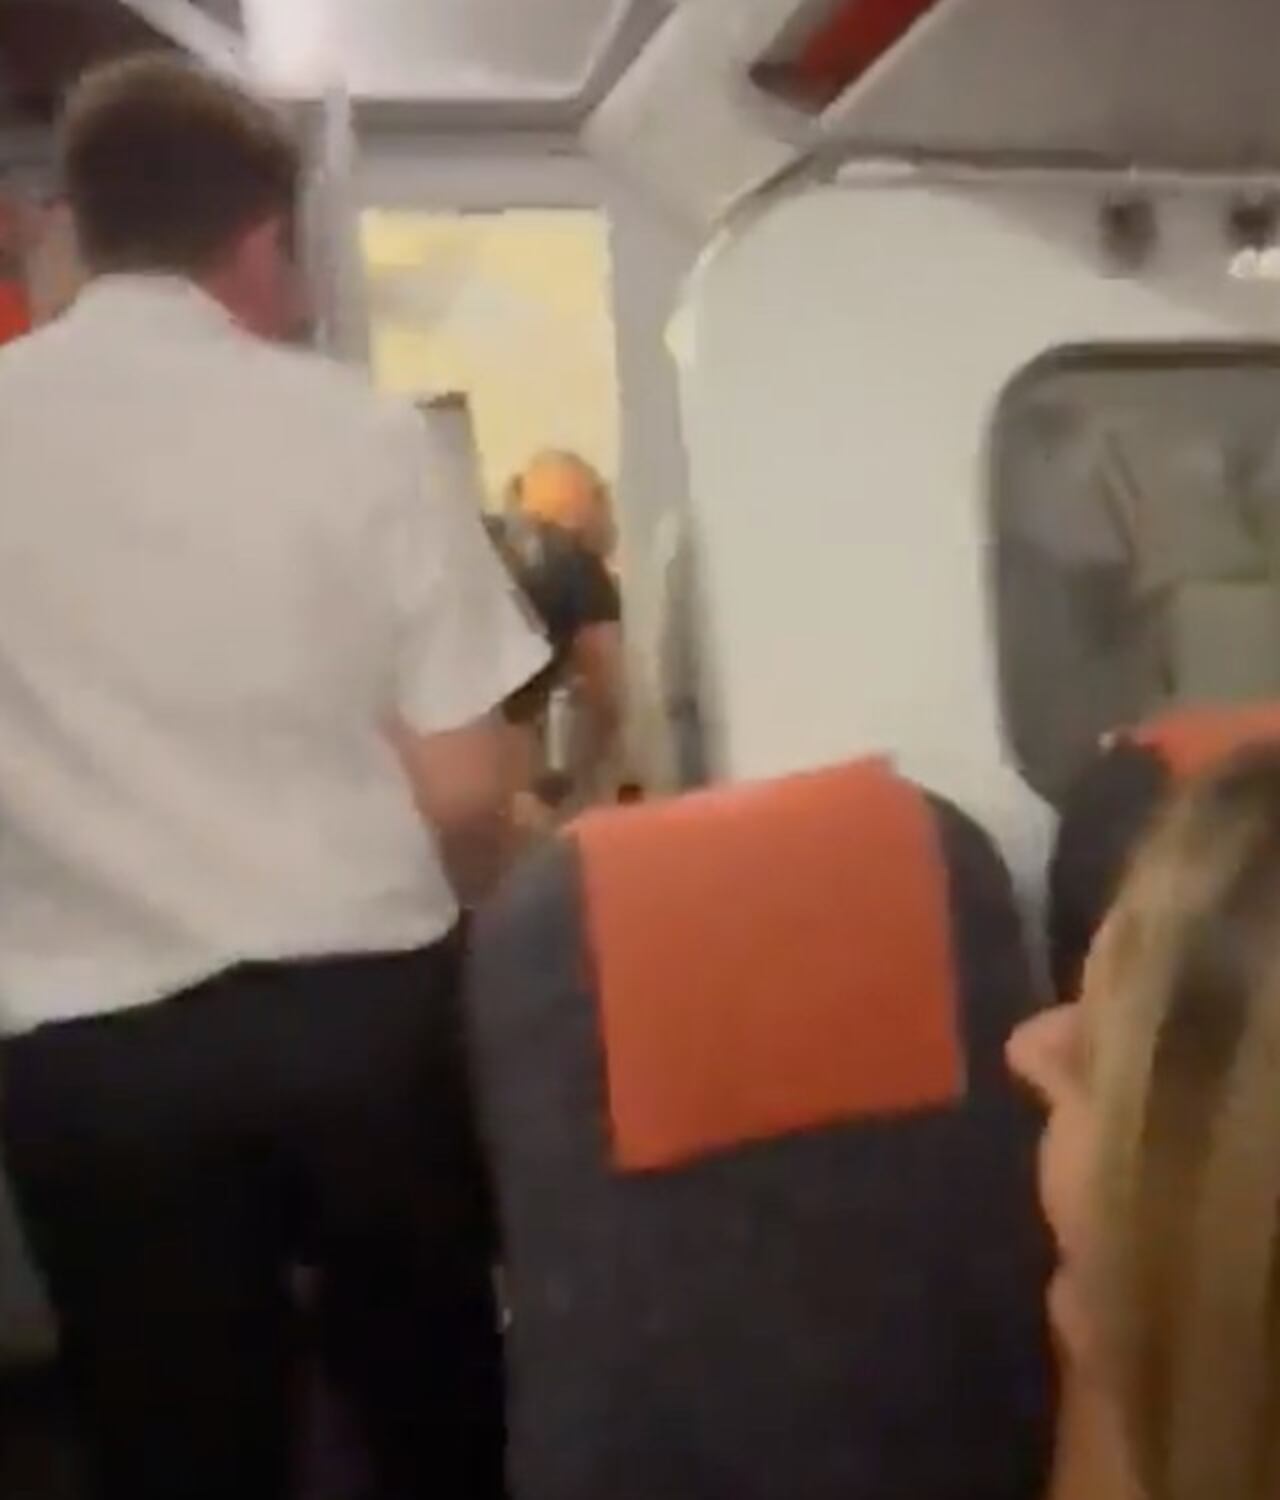 El preciso momento en el que fue pillada la pareja en el avión